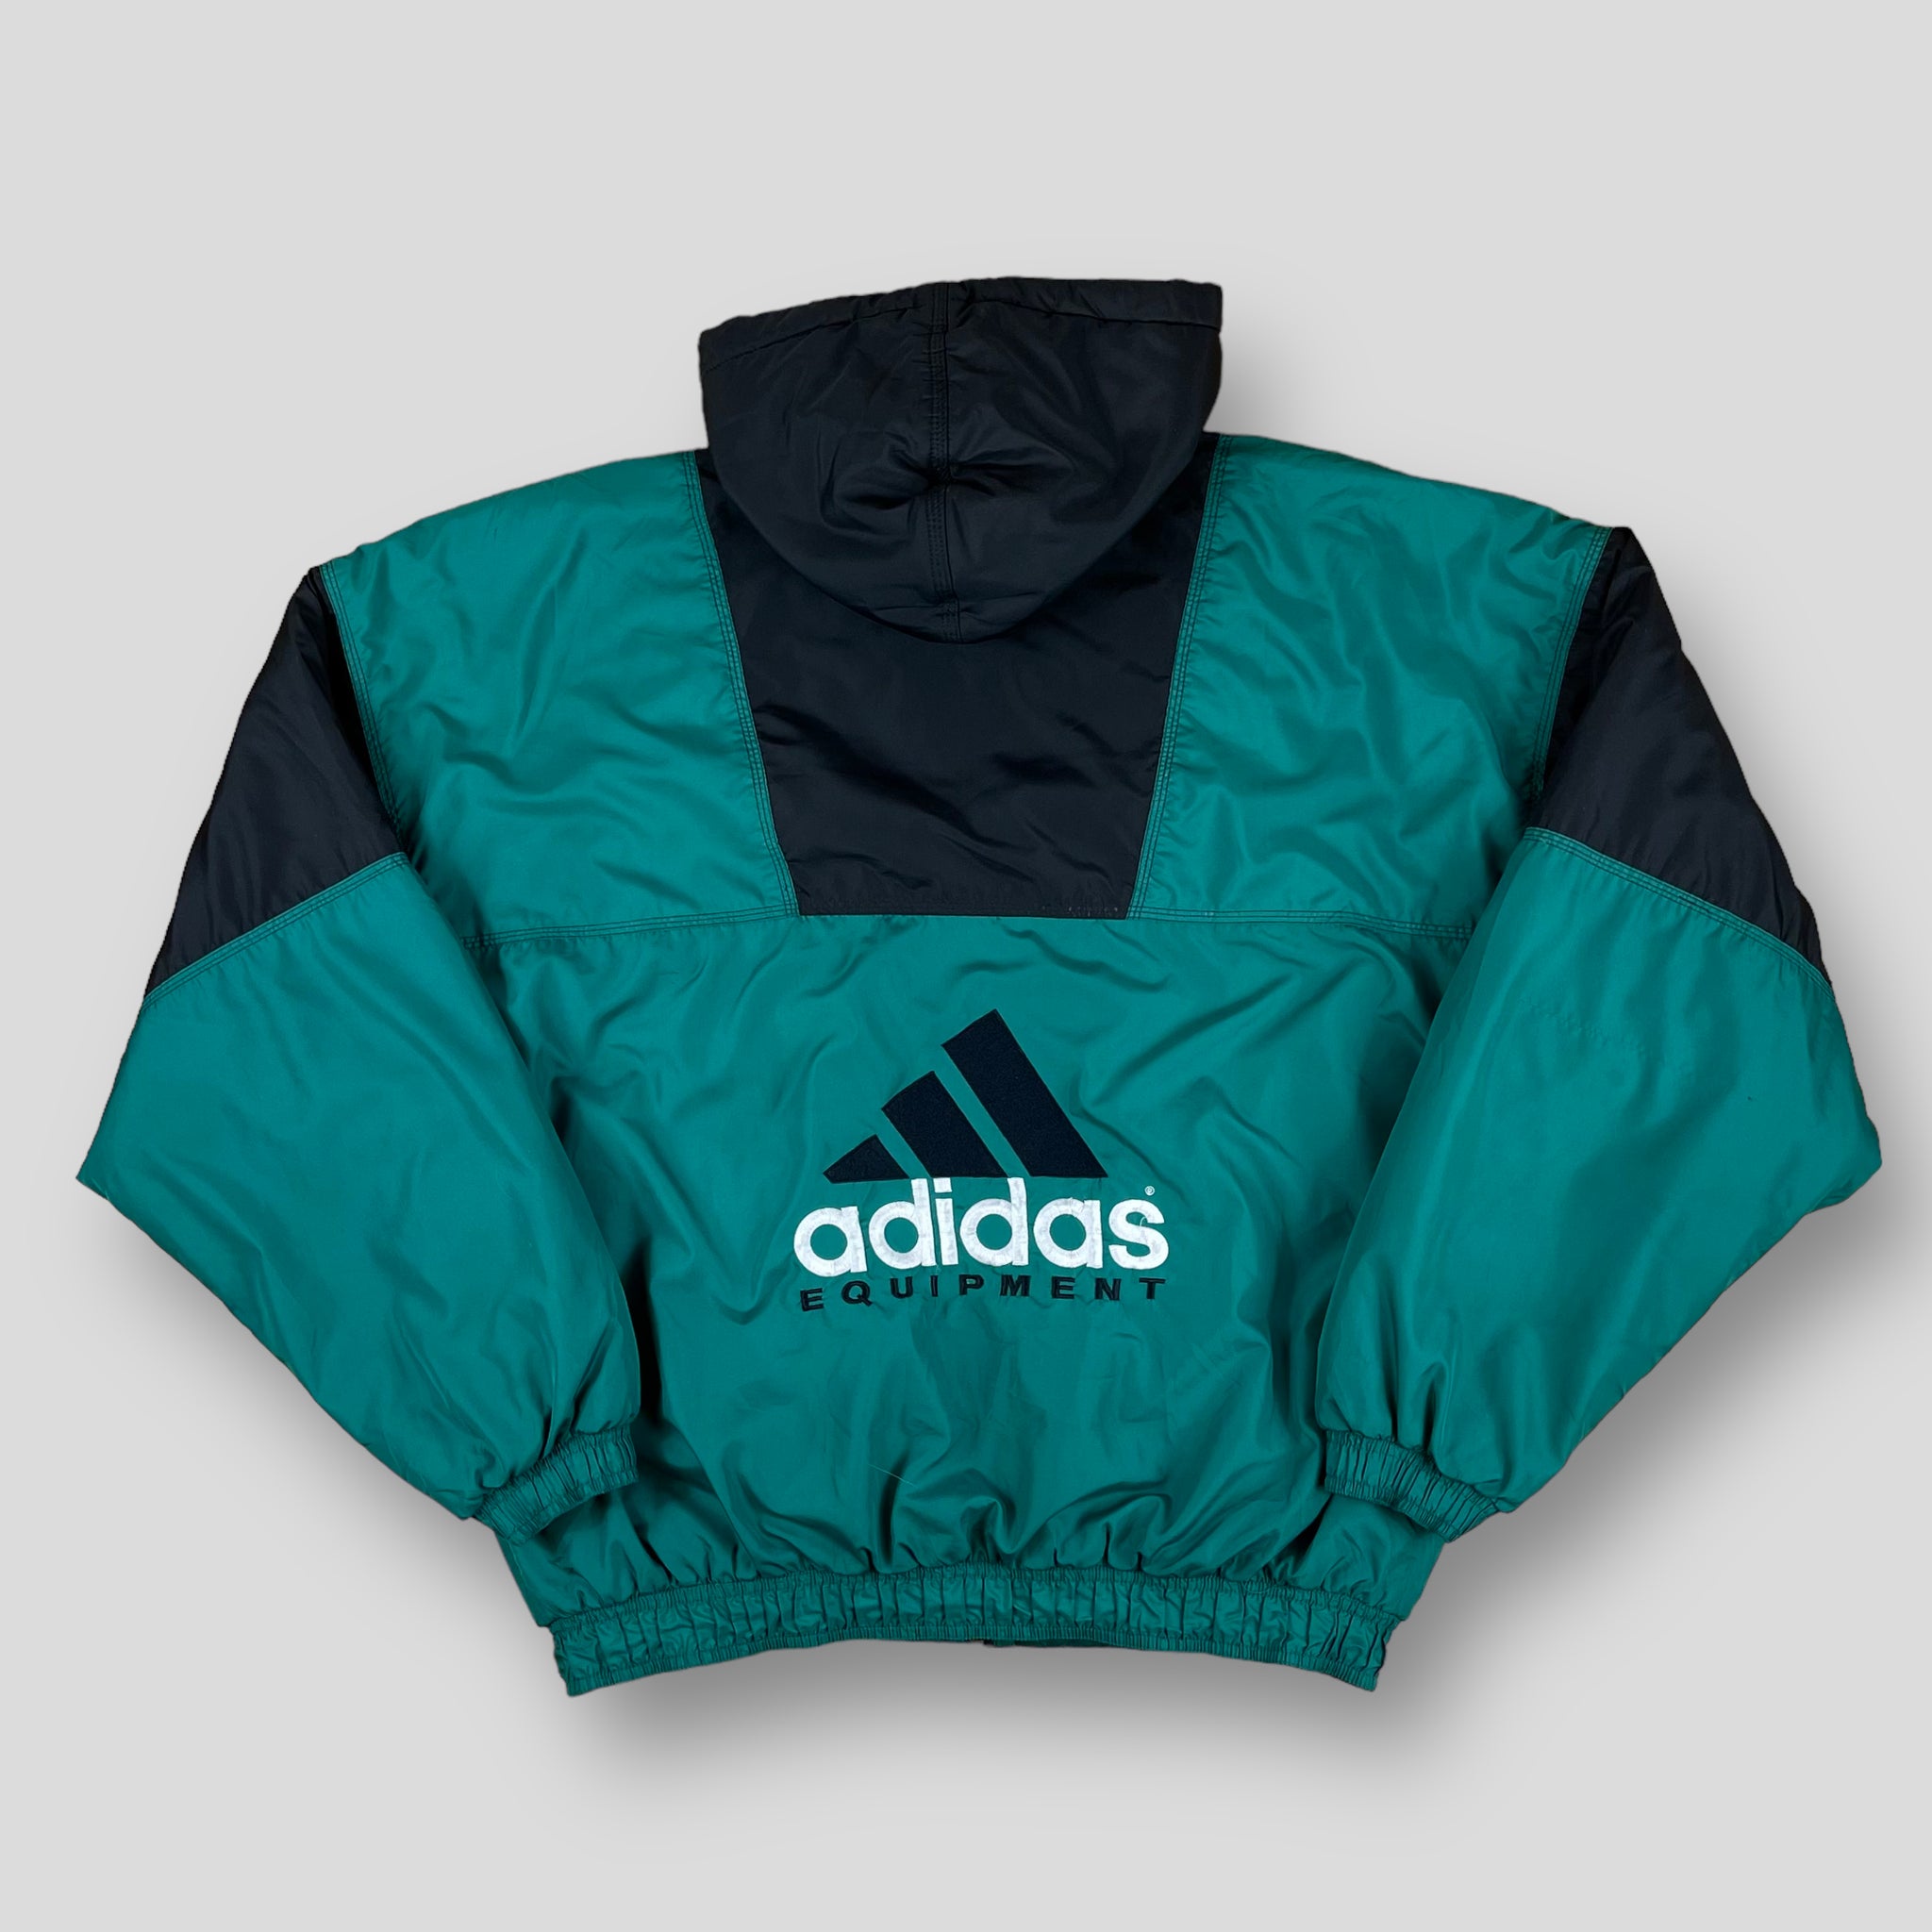 Vintage Adidas Equipment Jacket